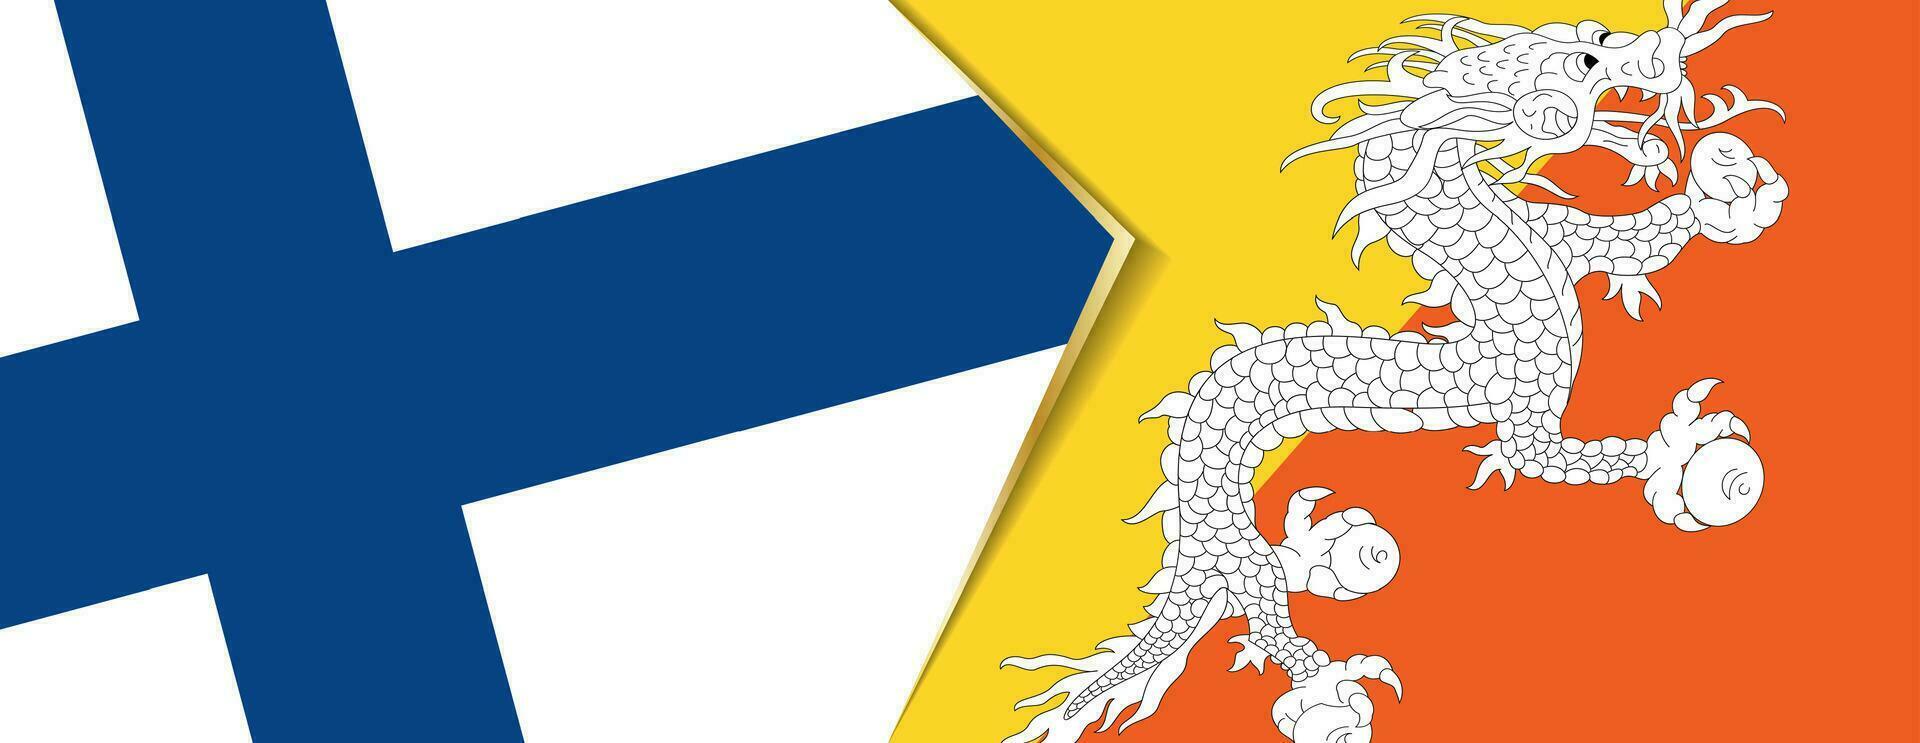 Finlande et bhoutan drapeaux, deux vecteur drapeaux.